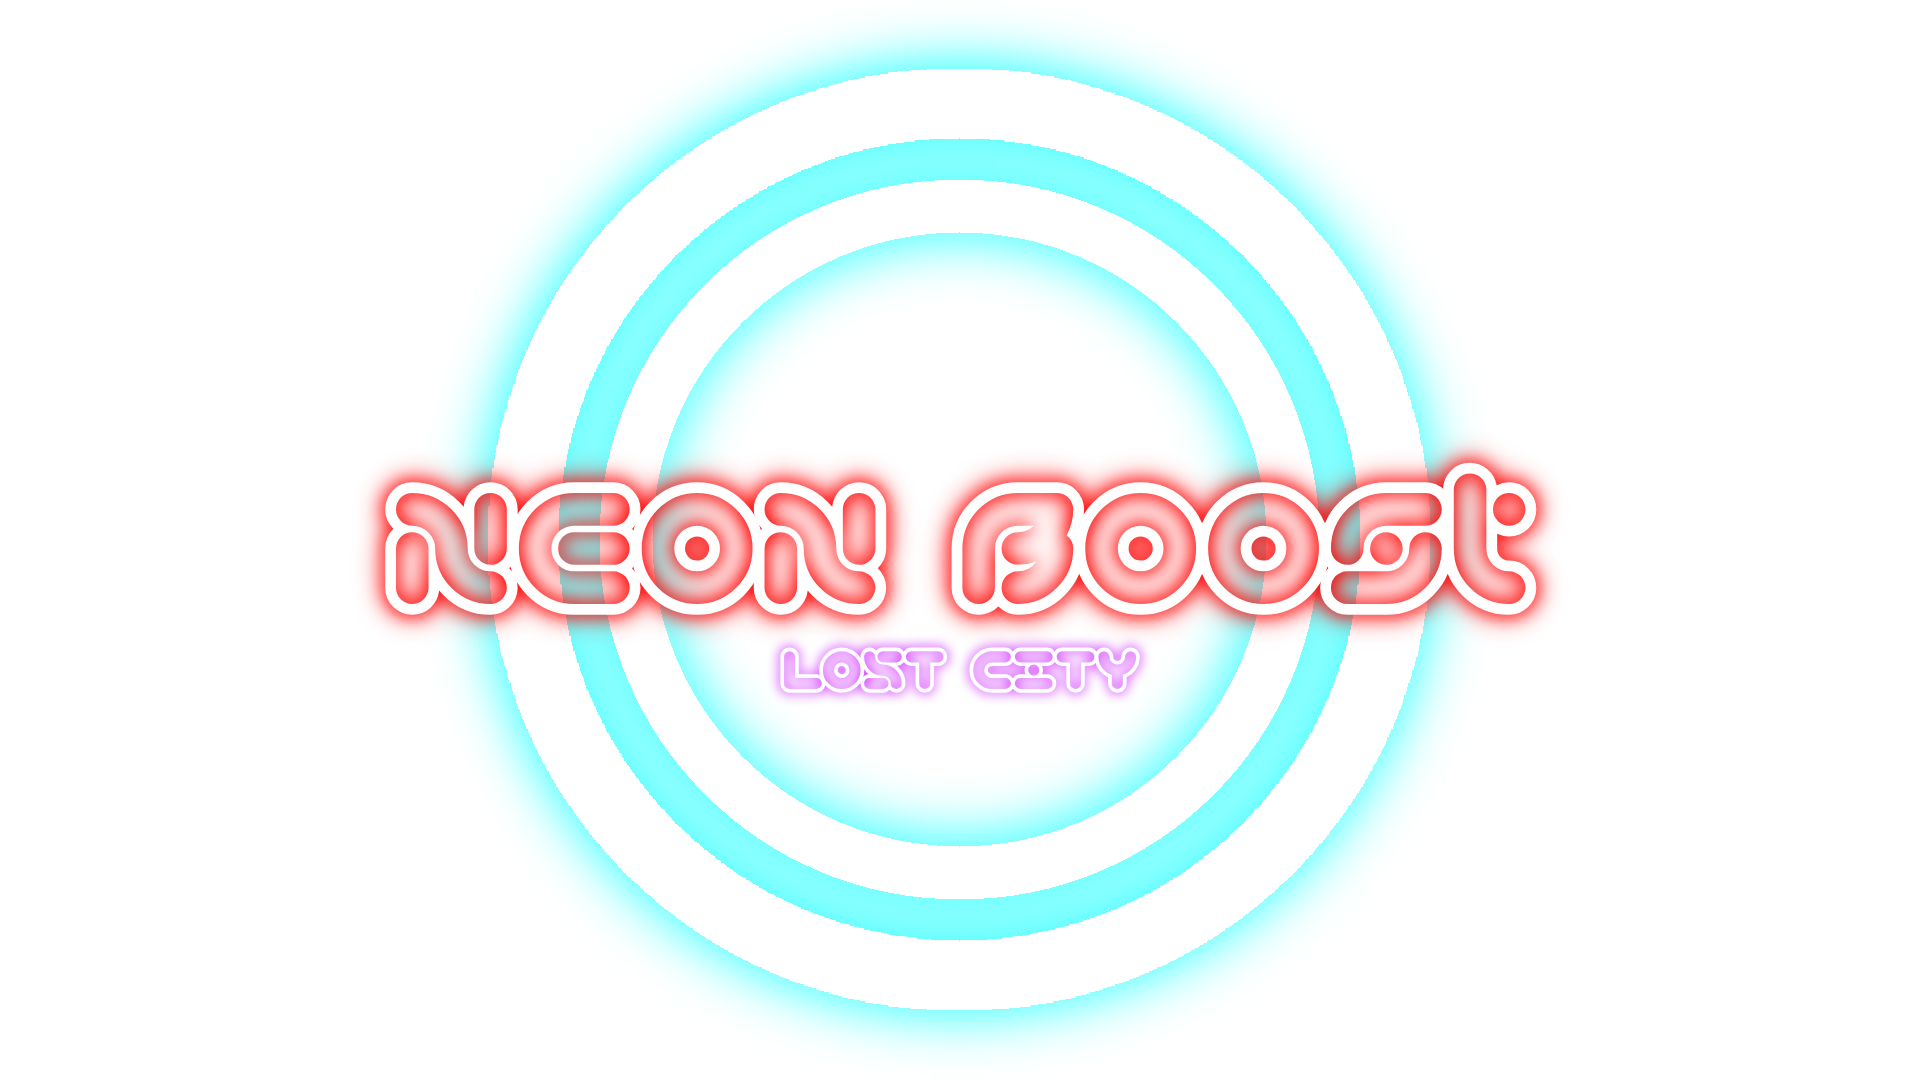 Neon Boost: Lost City